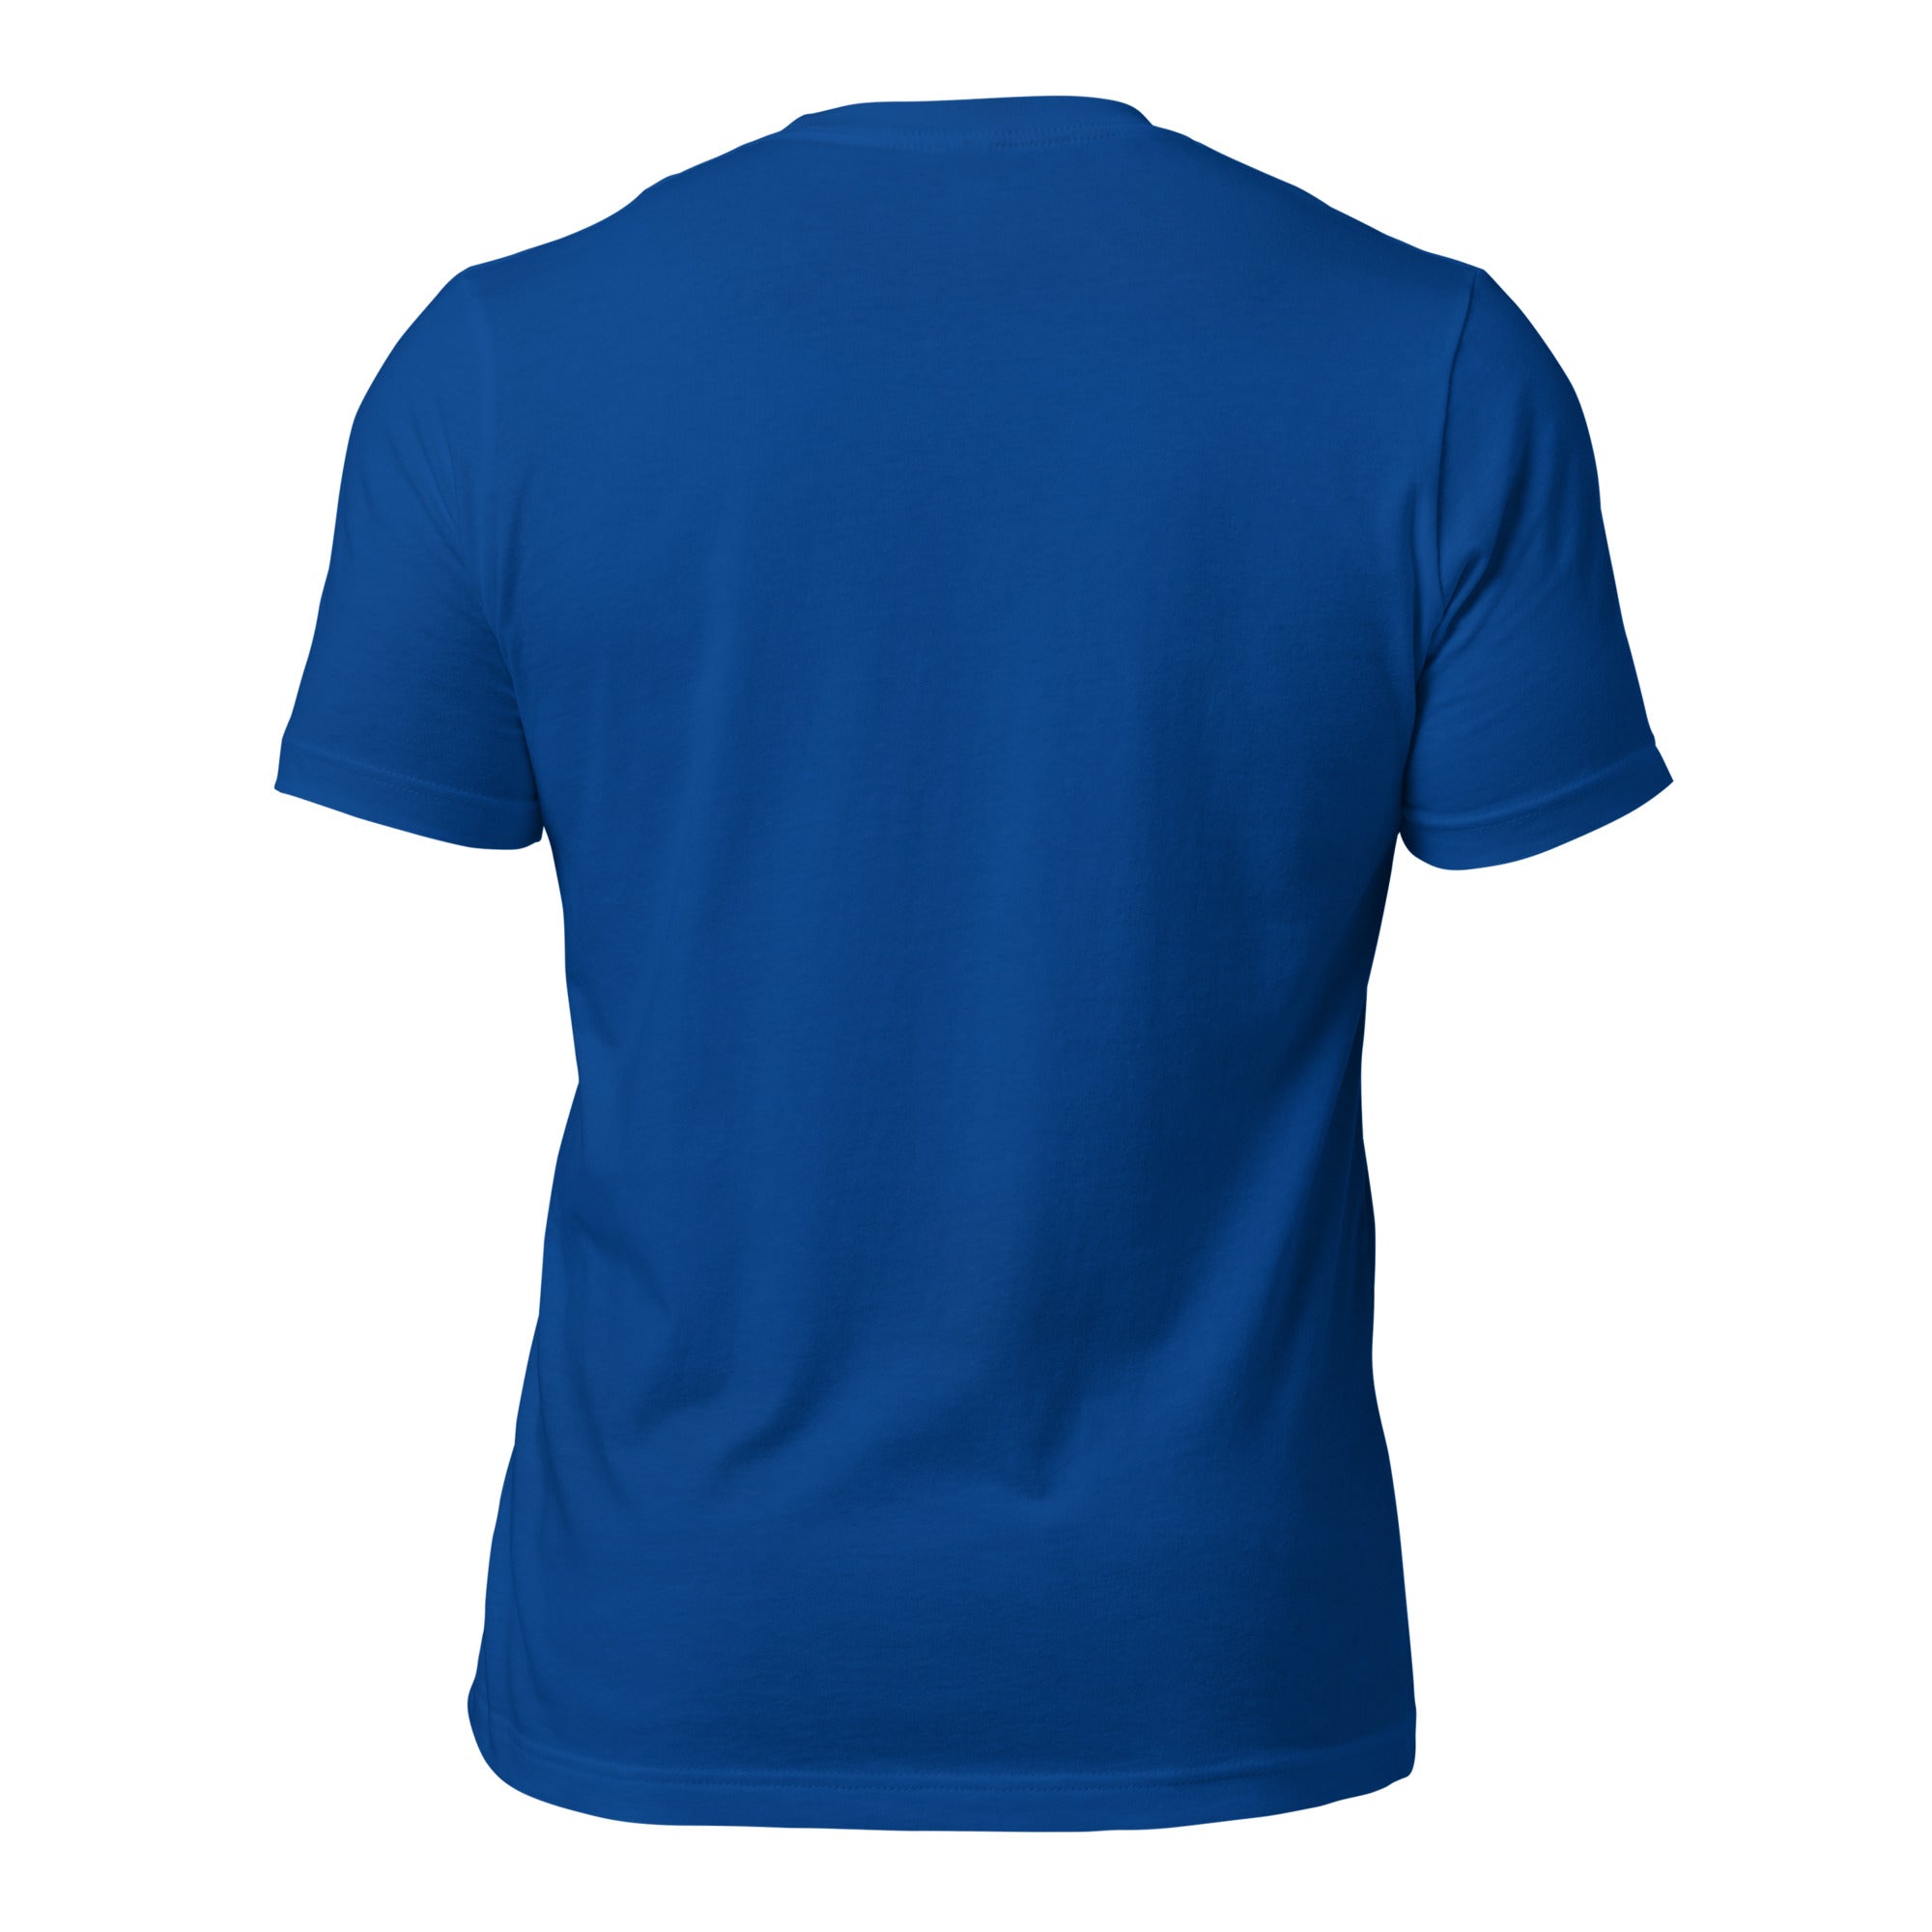 T-shirt en coton unisexe Sauvez les Bistrots, rejoignez l'Apéro sur couleurs foncées